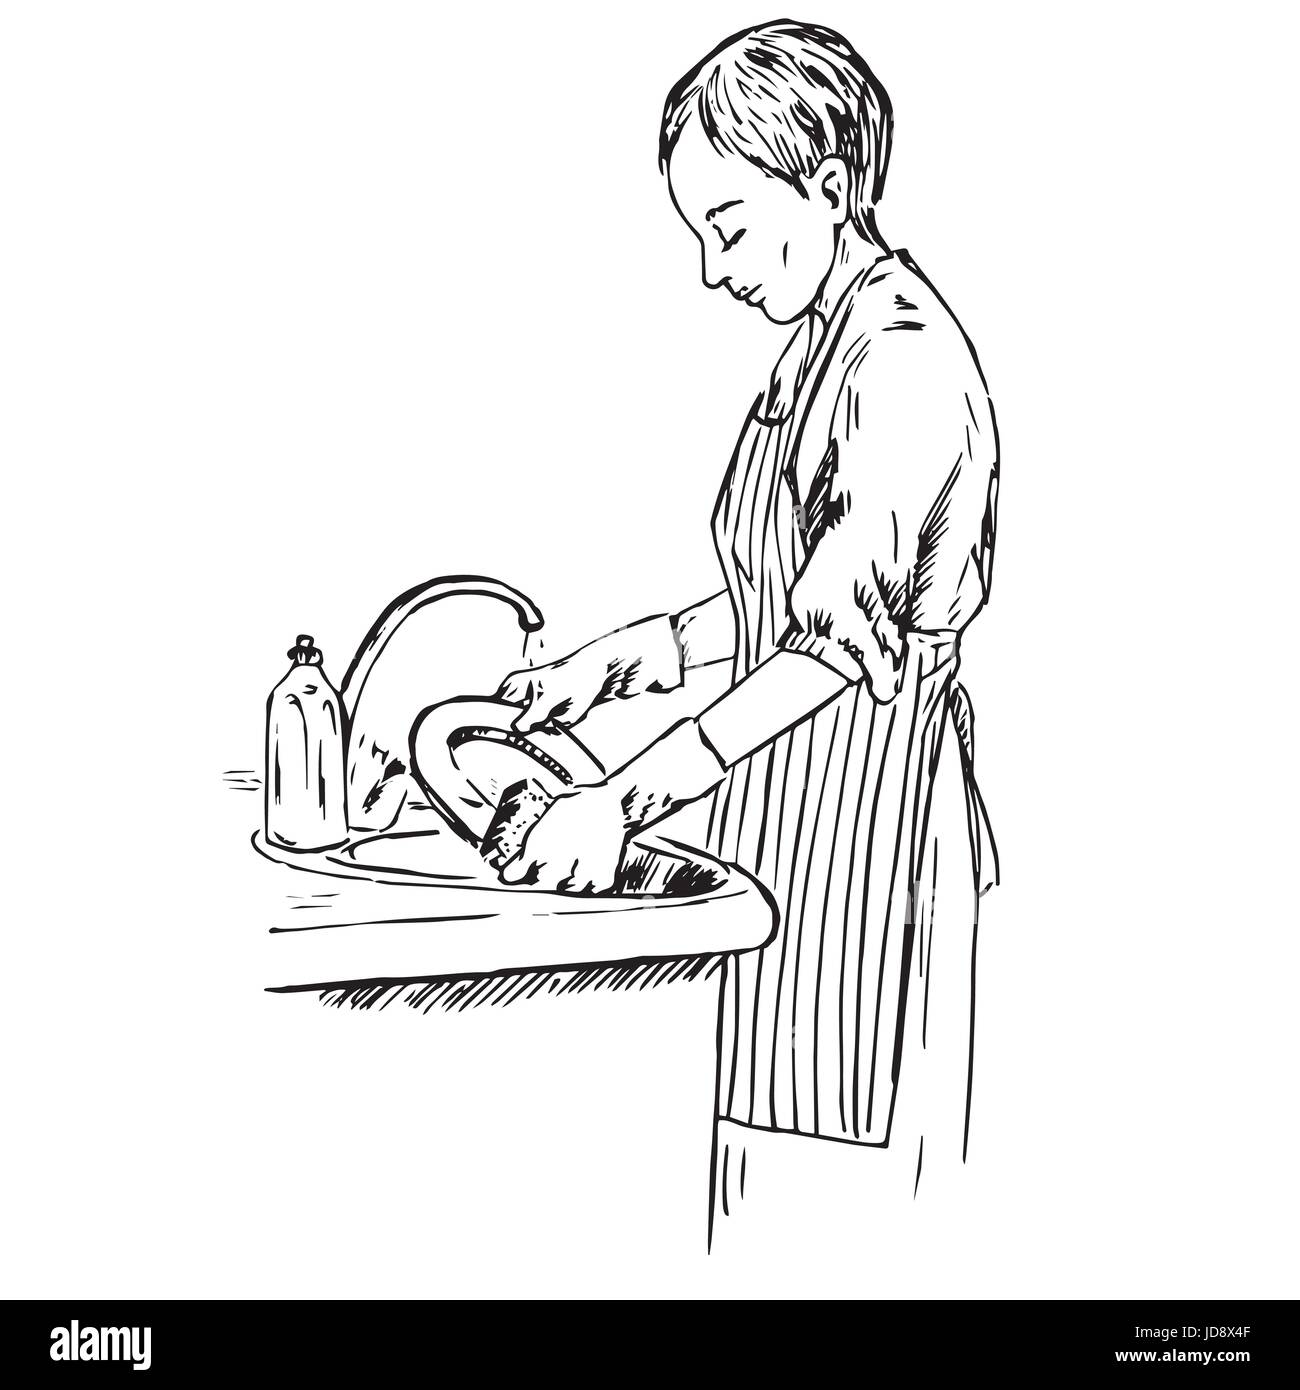 Jeune femme vêtue d'un tablier à rayures lave-vaisselle, hand drawn doodle, sketch dans un style pop art, noir et blanc vector illustration Illustration de Vecteur